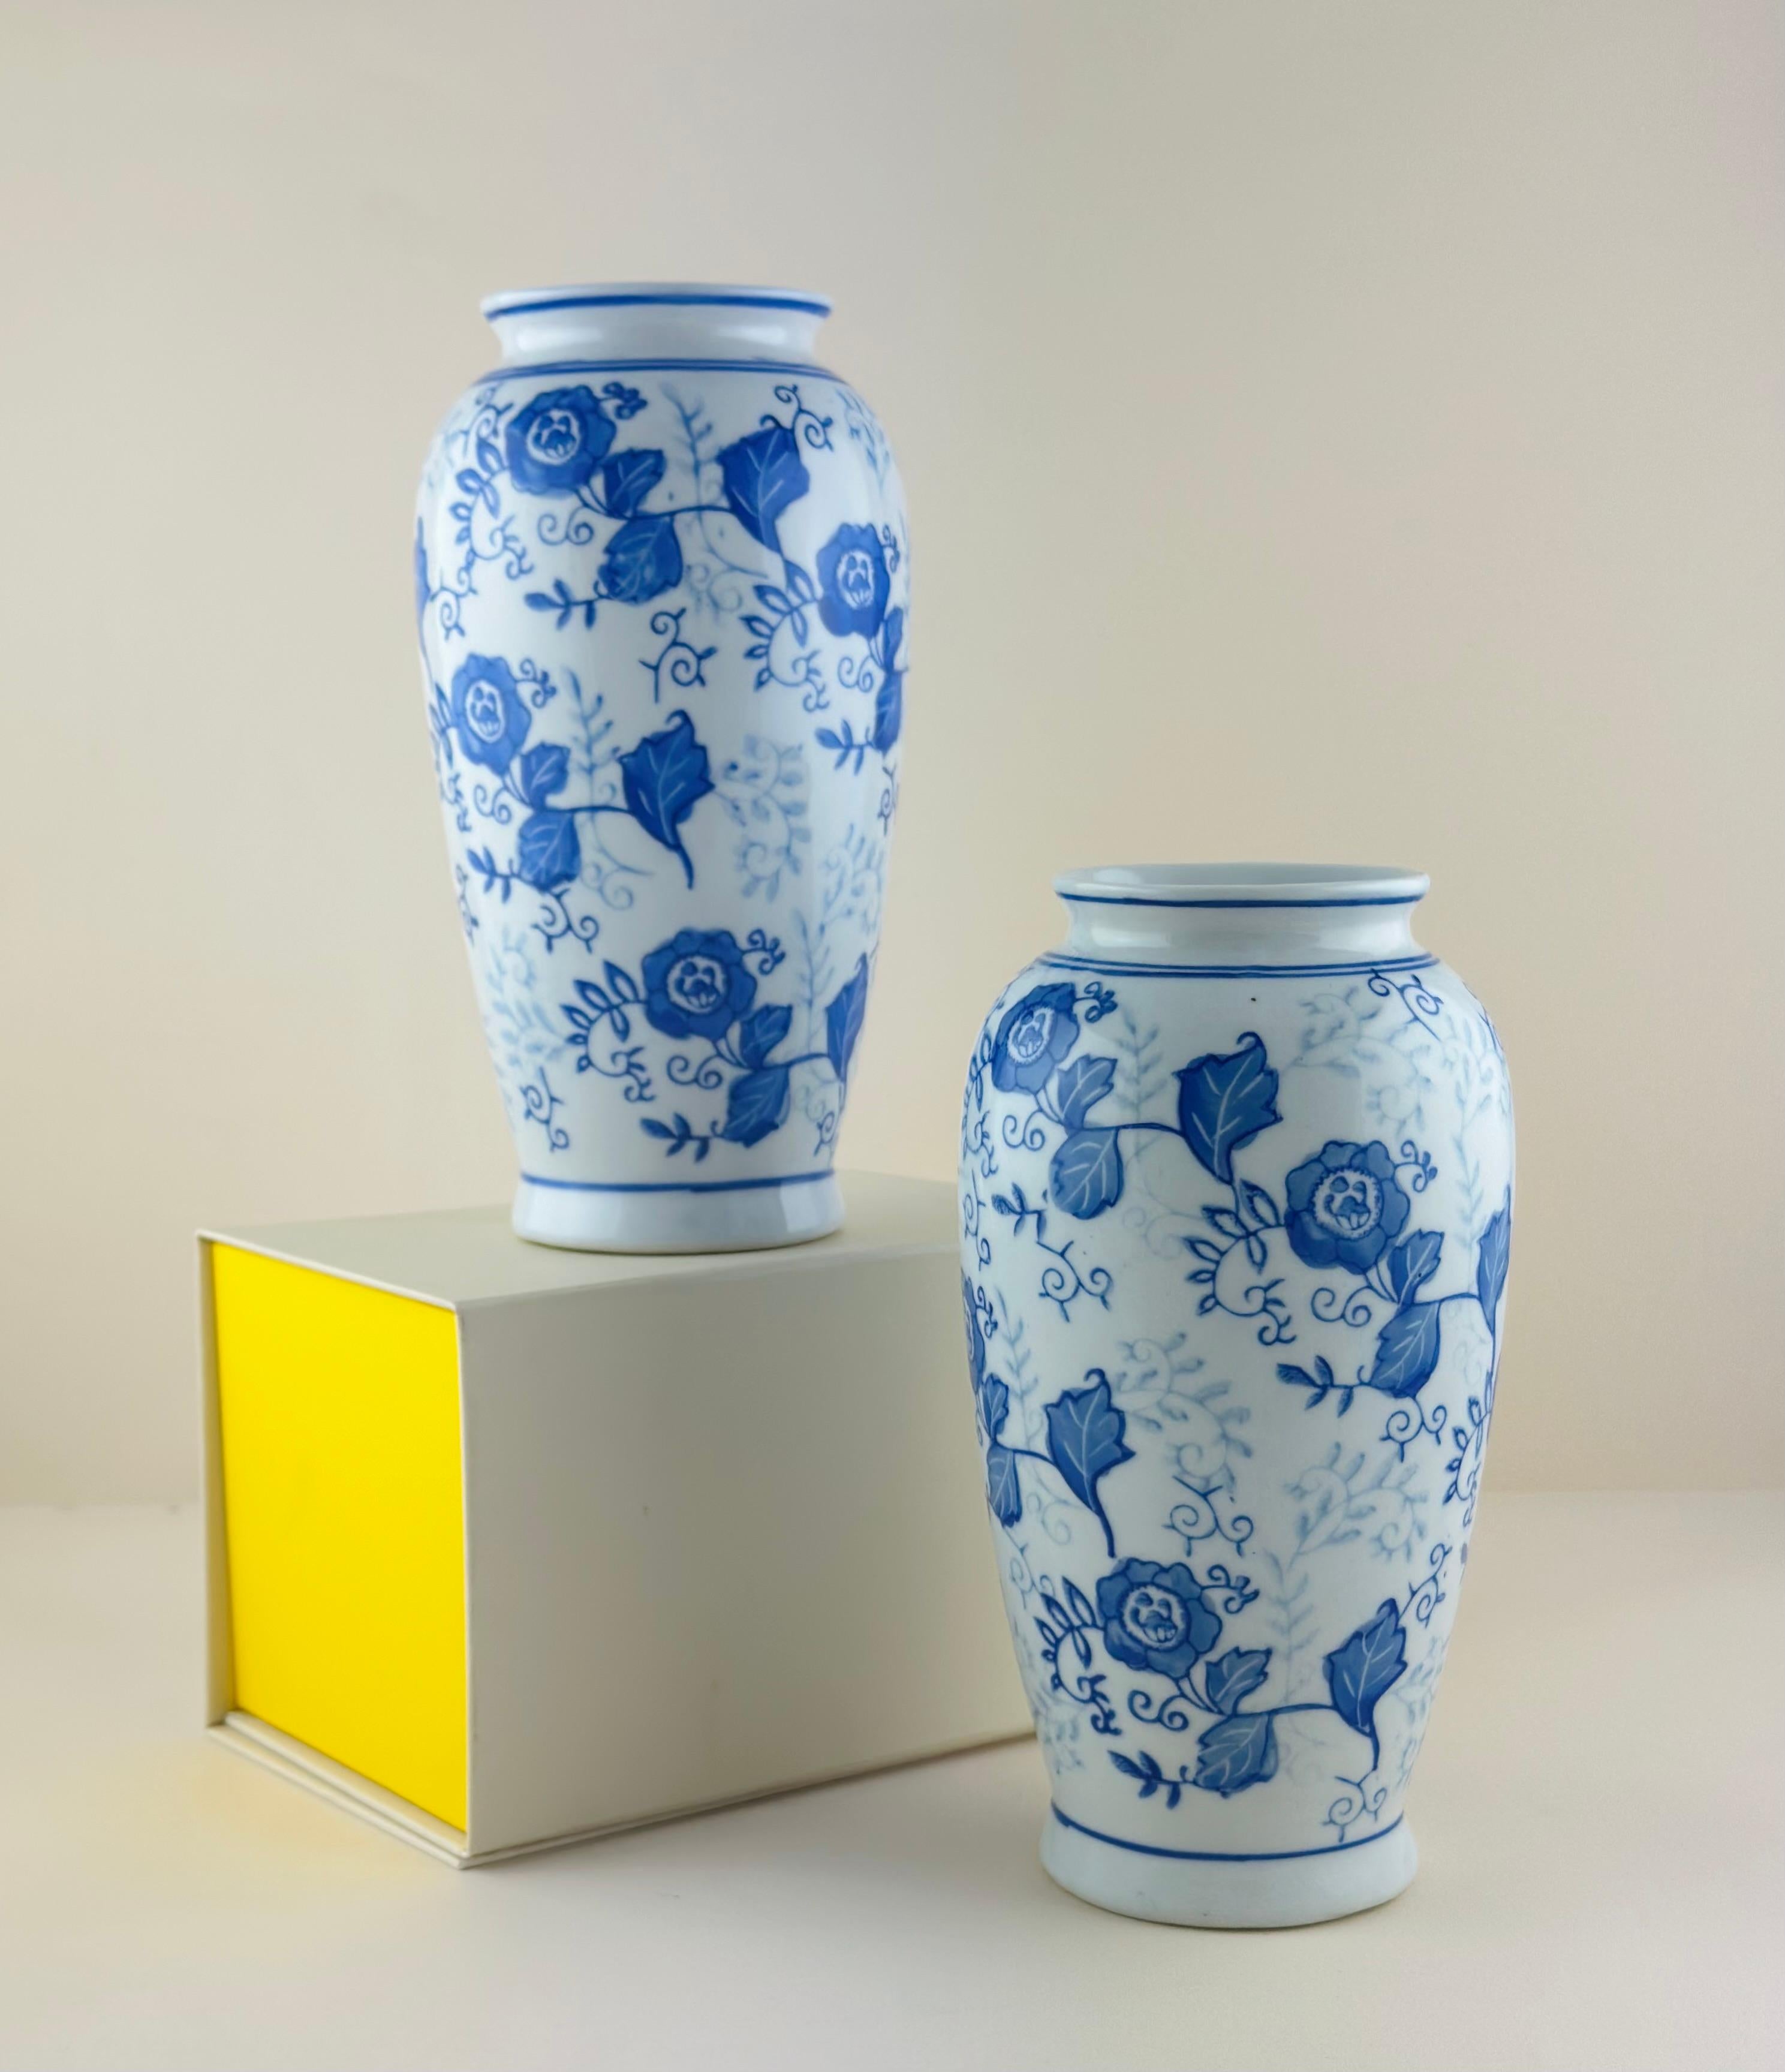 Paire de vases vintage de style Ming, fabriqués en Chine vers la fin des années 1980.

Délicatement peints à la main et émaillés avec une décoration de style Ming : Le corps de ces vases en forme de 